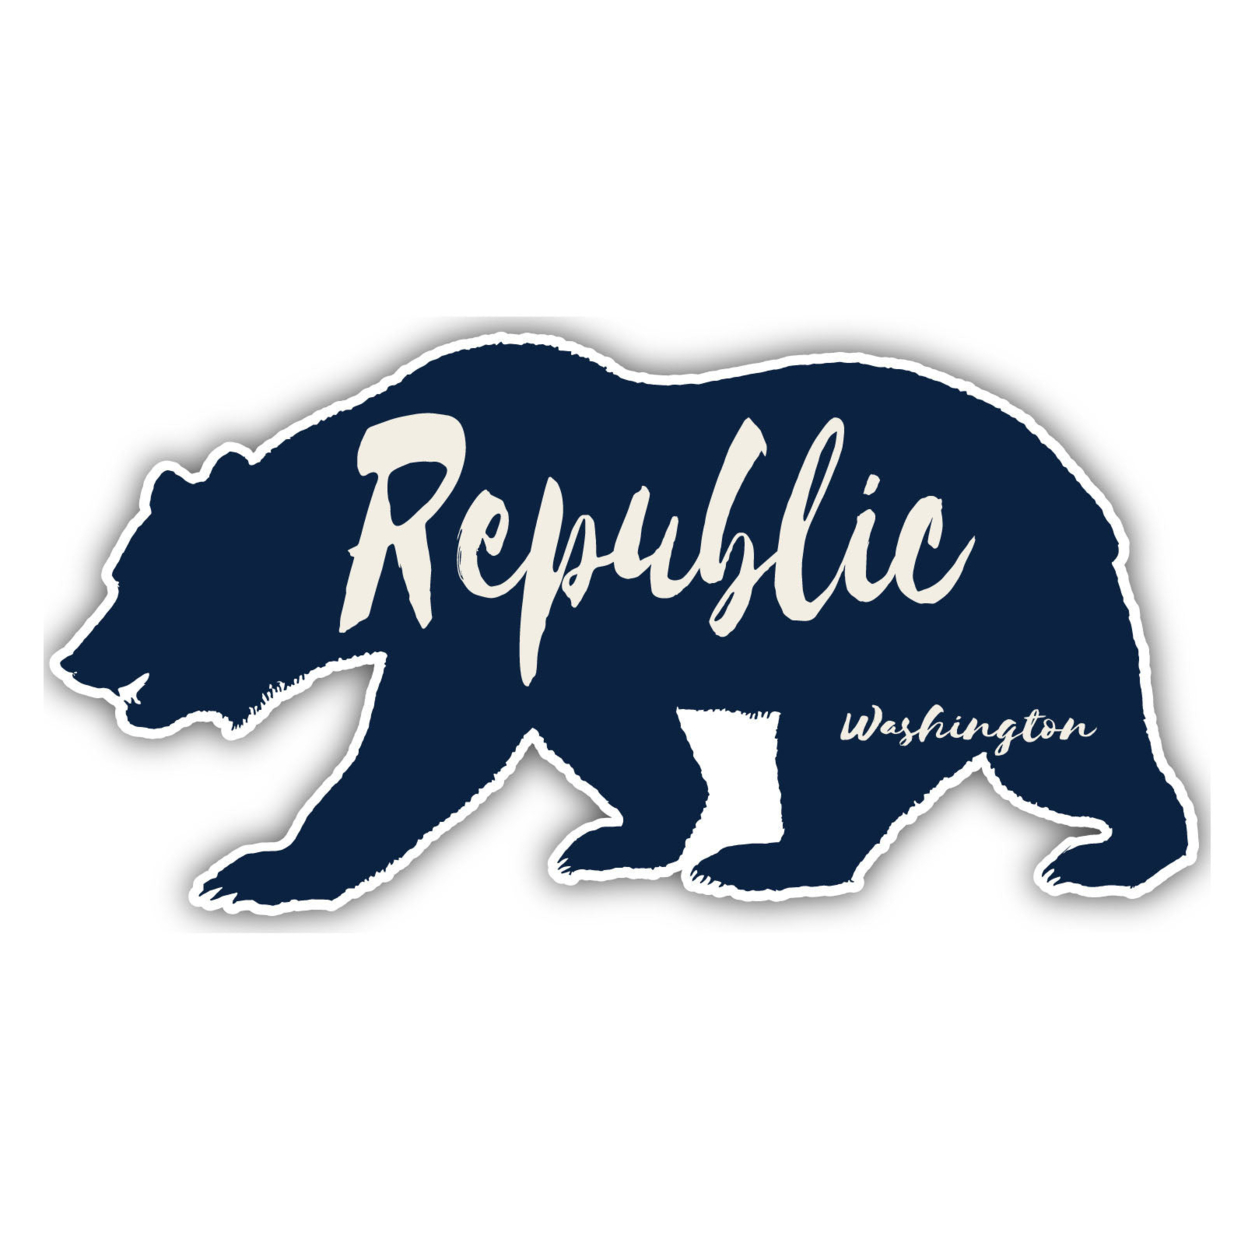 Republic Washington Souvenir Decorative Stickers (Choose Theme And Size) - Single Unit, 4-Inch, Tent